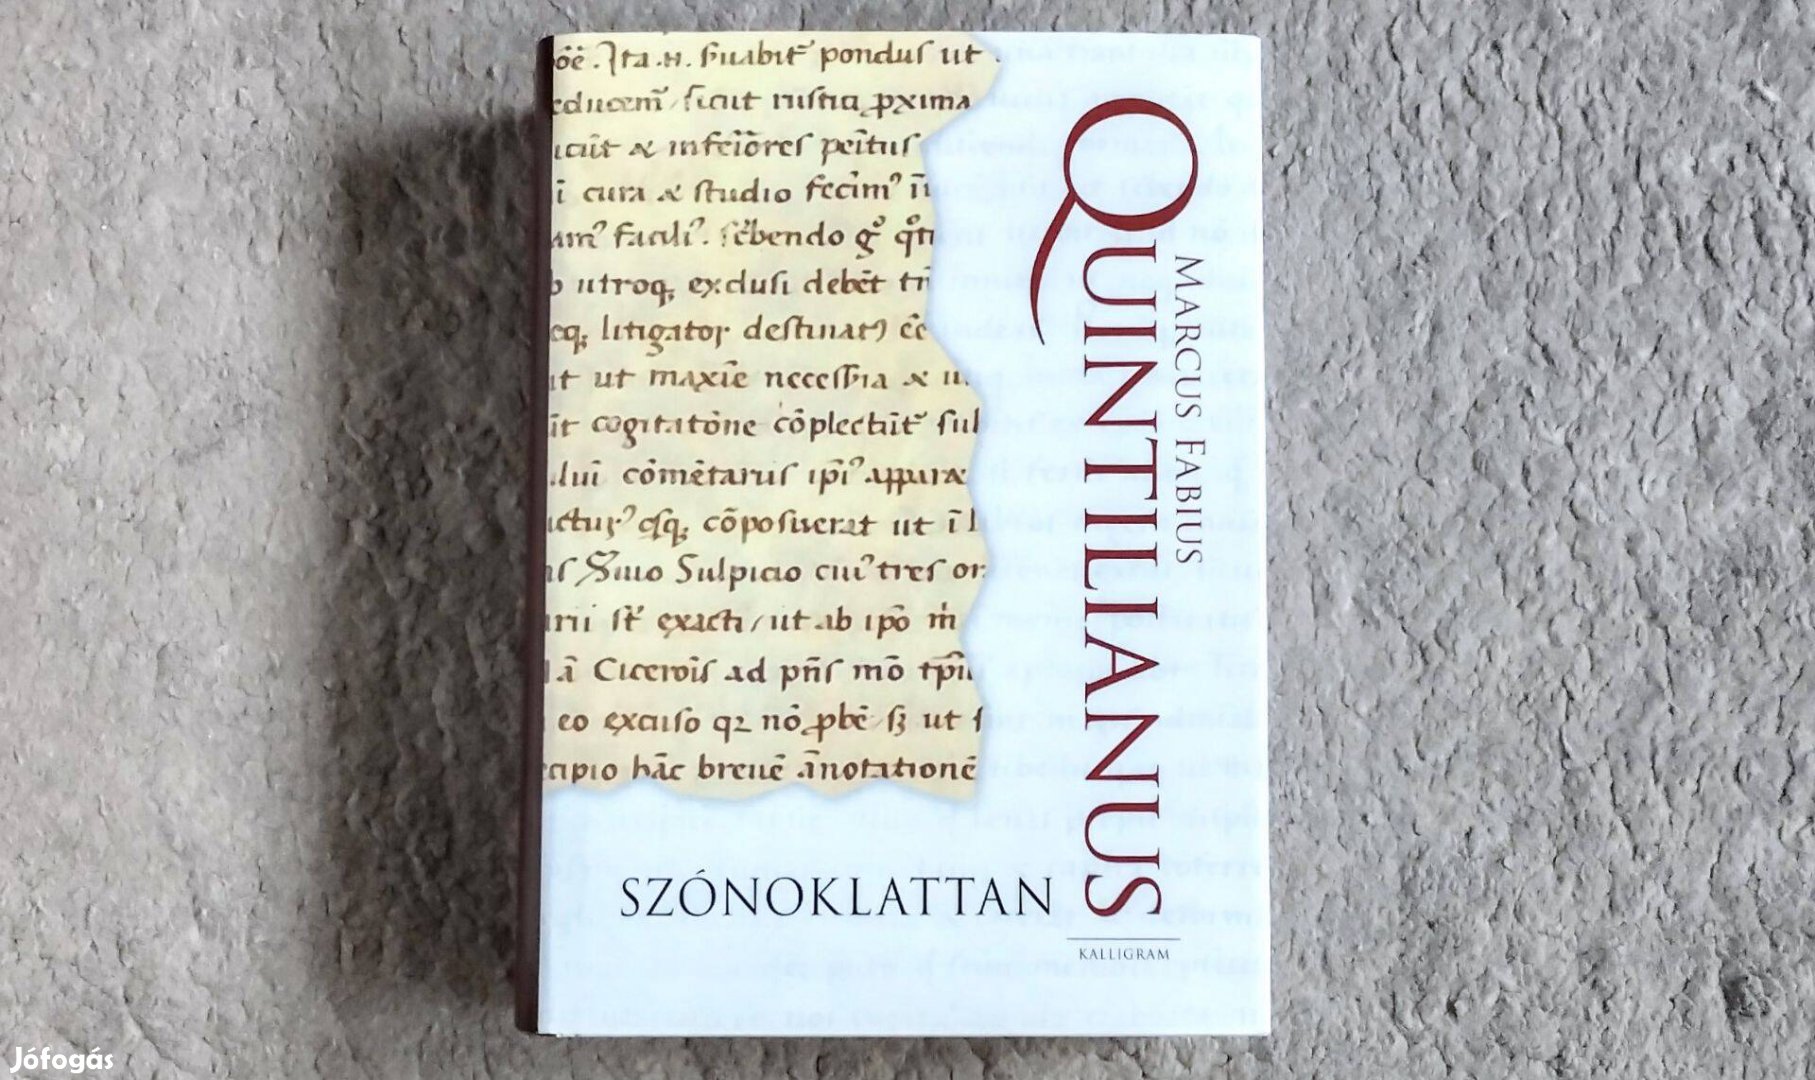 Szónoklattan - Marcus Fabius Quintilianus Cicero retorikaelmélet